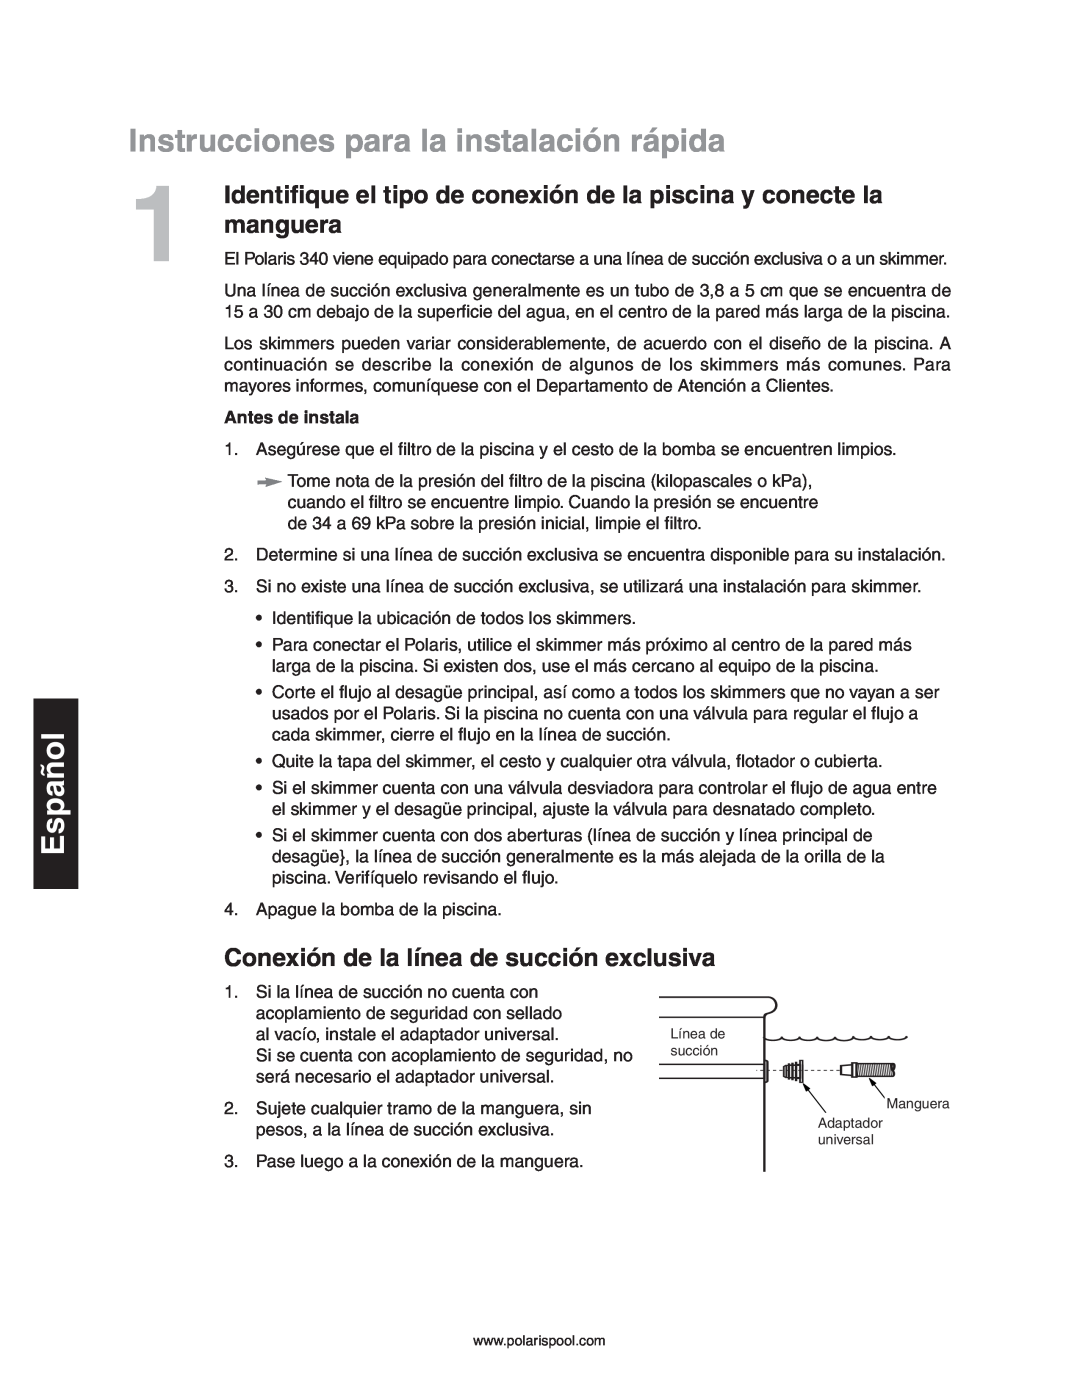 Polaris 340 Instrucciones para la instalación rápida, manguera, Conexión de la línea de succión exclusiva, Español 